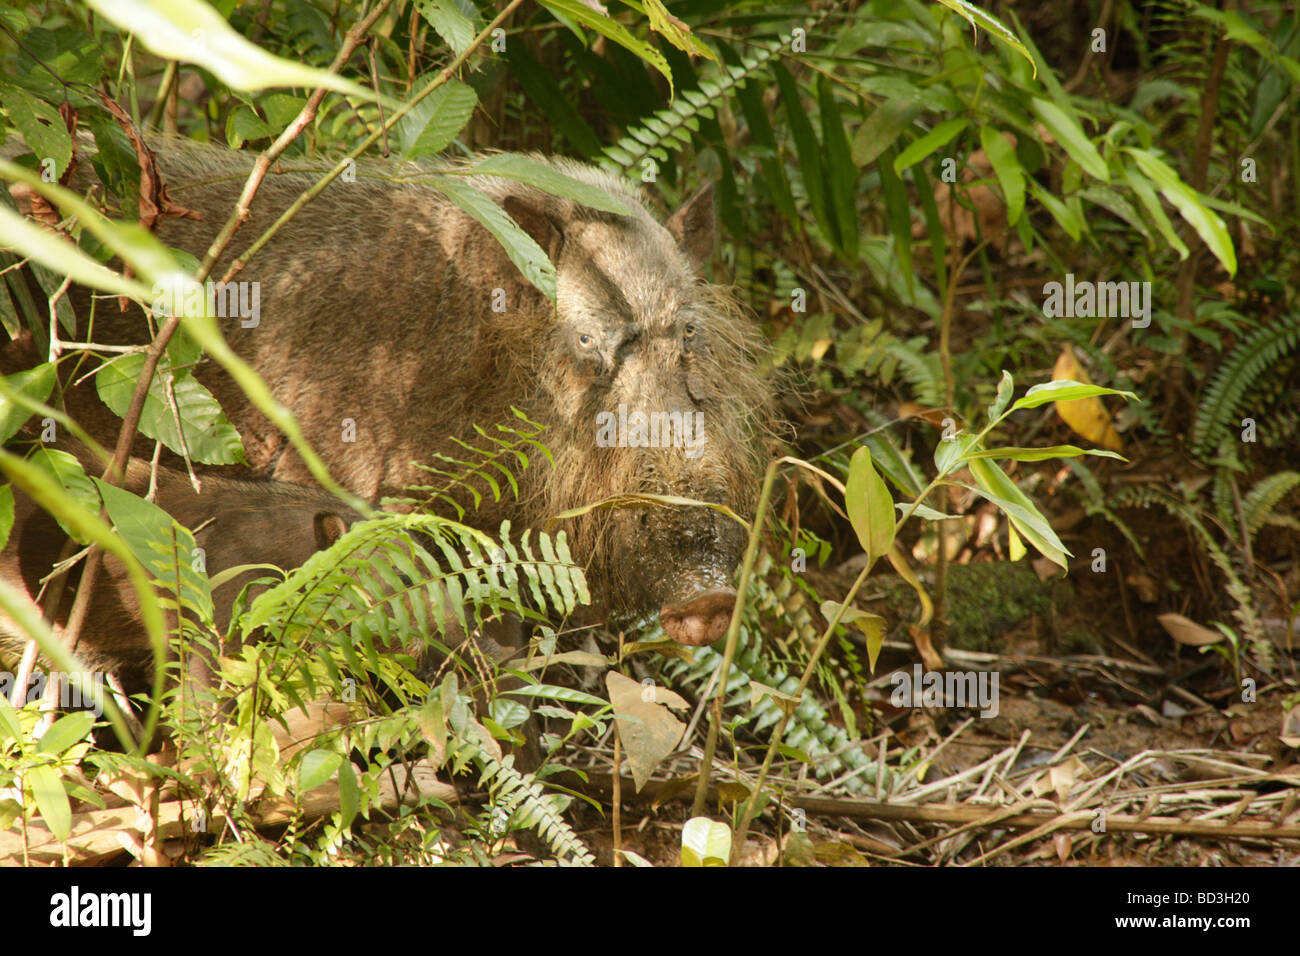 Cochon barbu Bornéo Sus barbatus dans le parc national de Bako près de Sarawak Kuching Bornéo Malaisie Asie du sud-est Banque D'Images